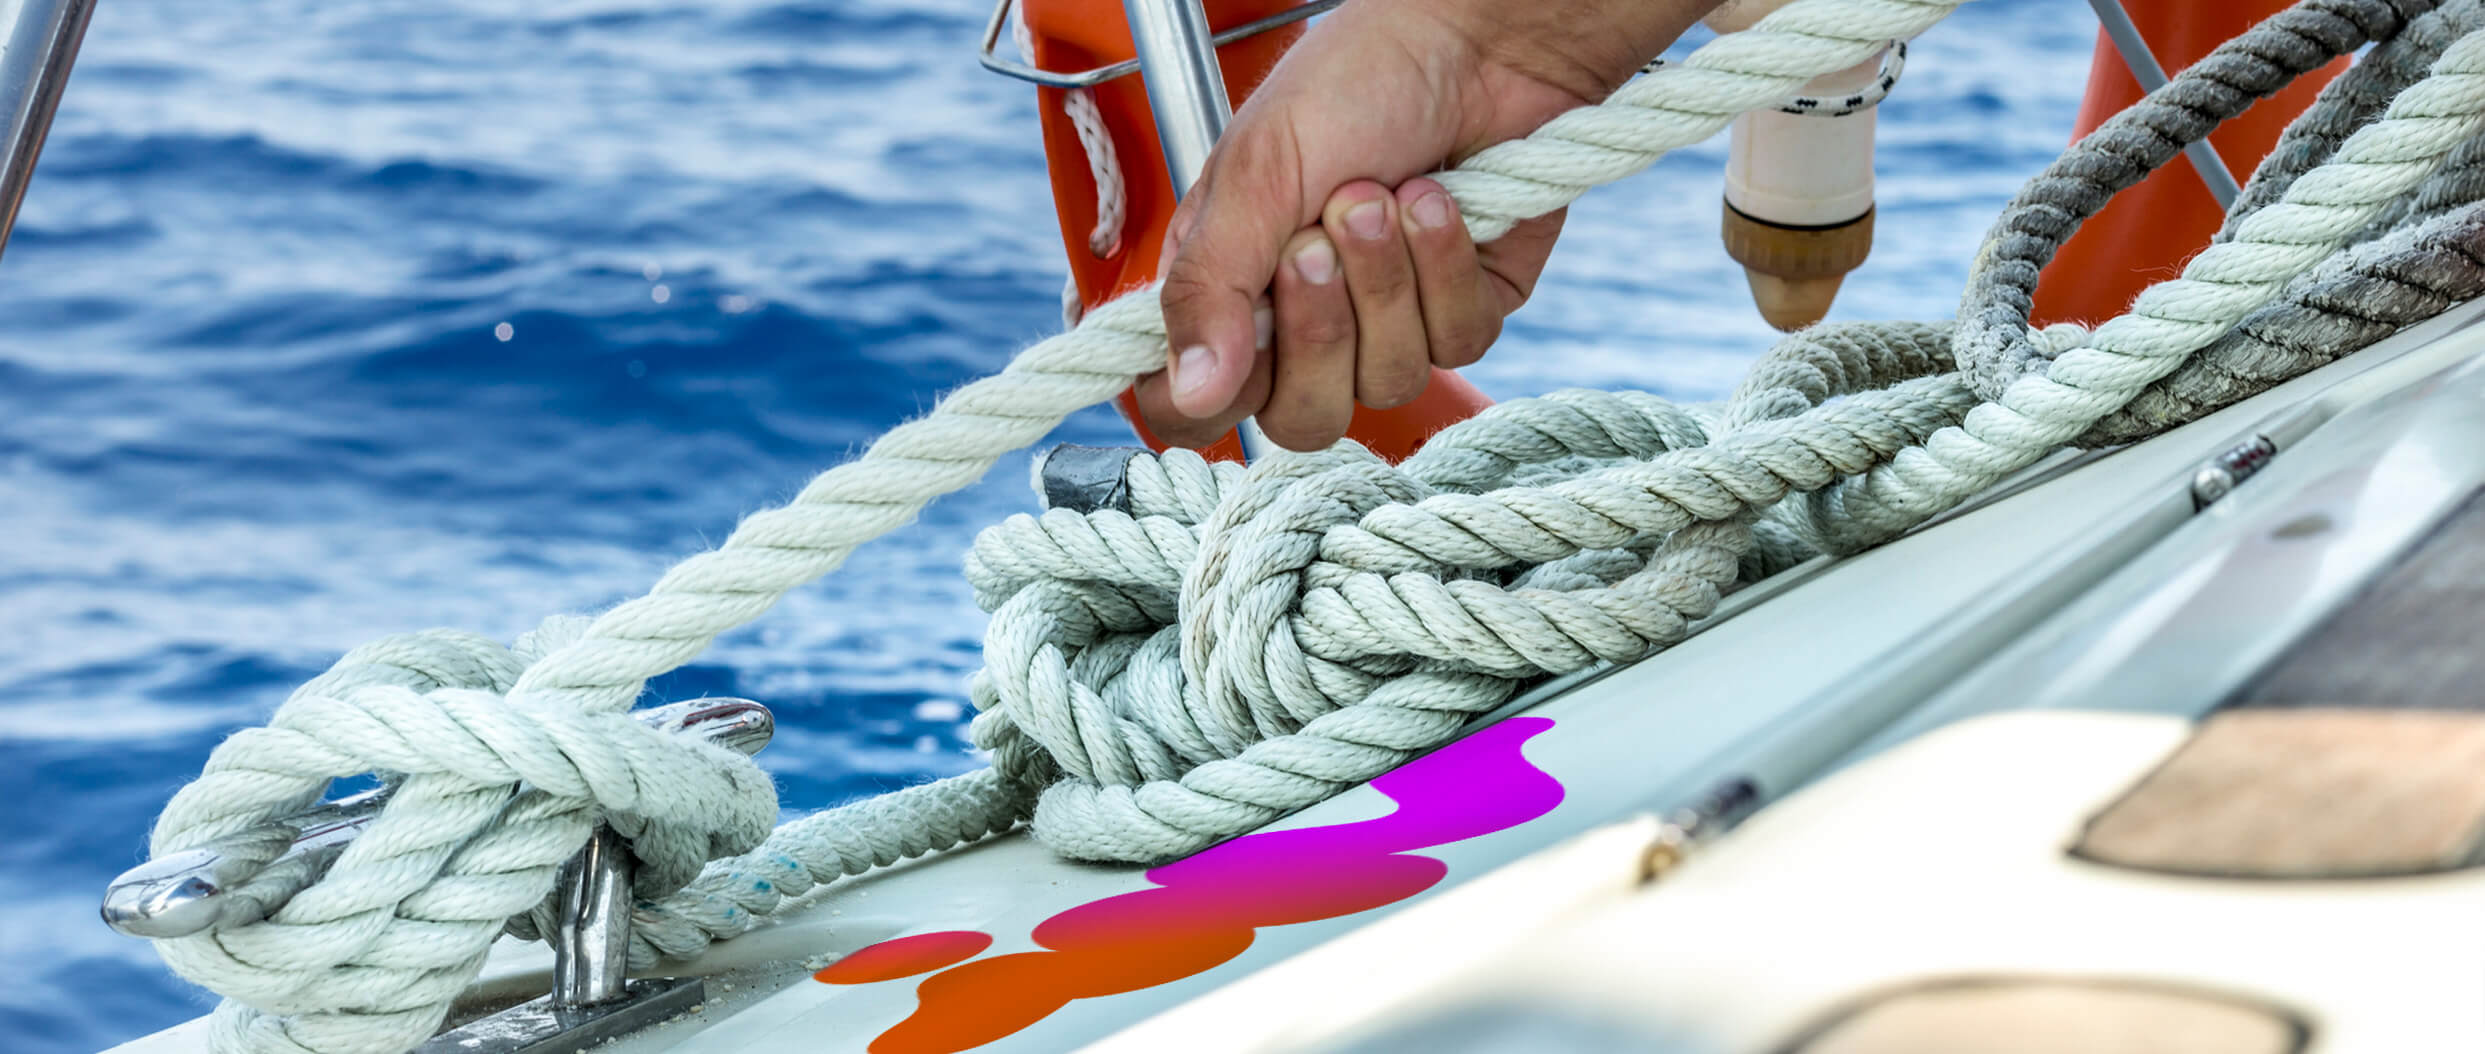 Sailboat, rope, knots